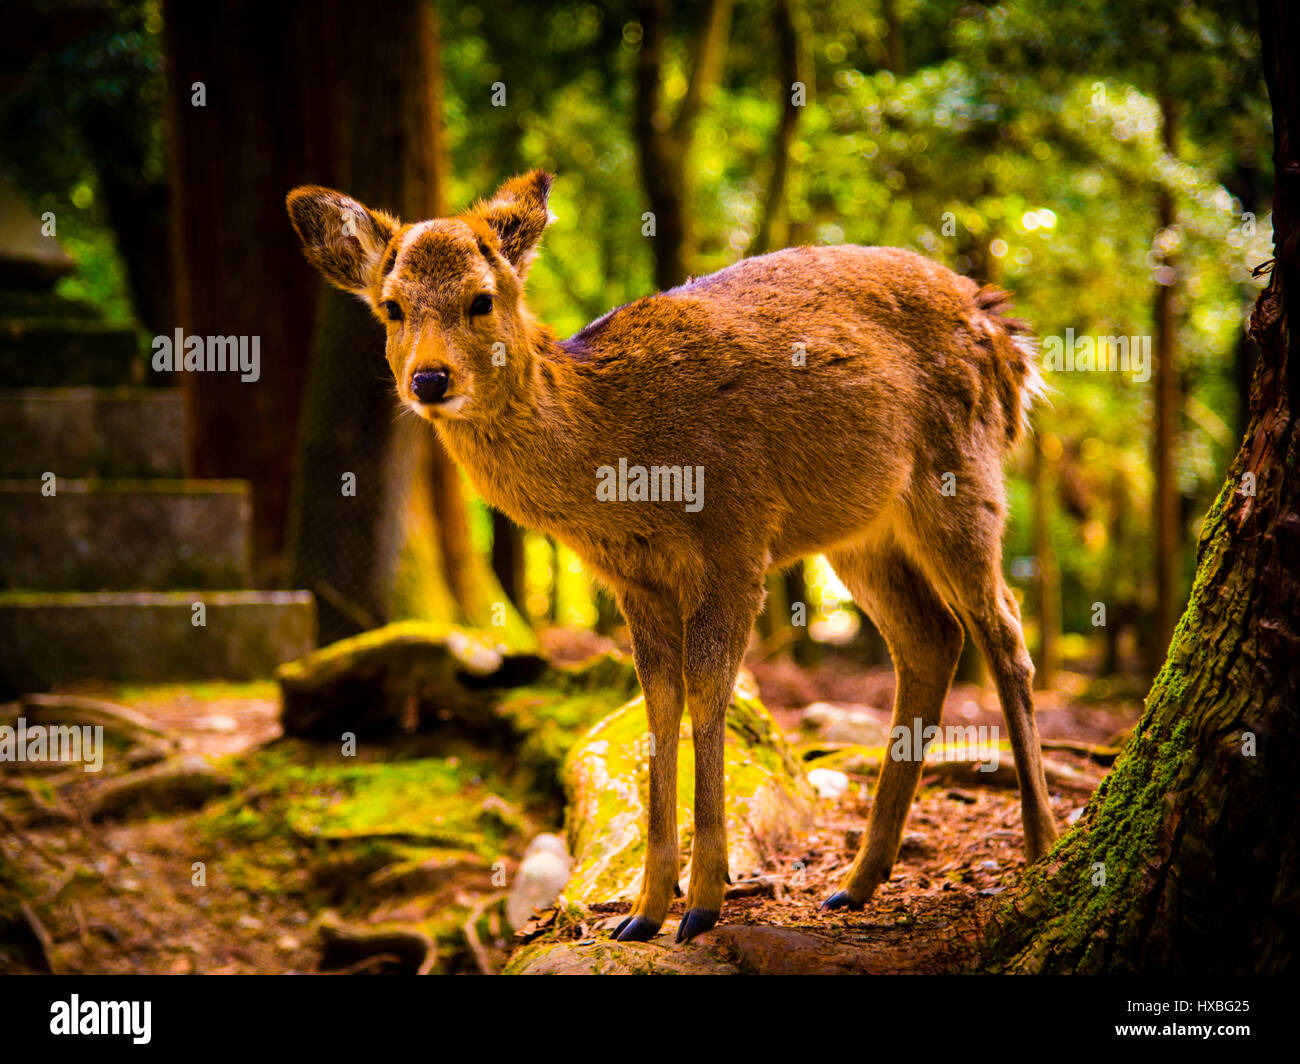 Deer in Nara Park Japan Stock Photo